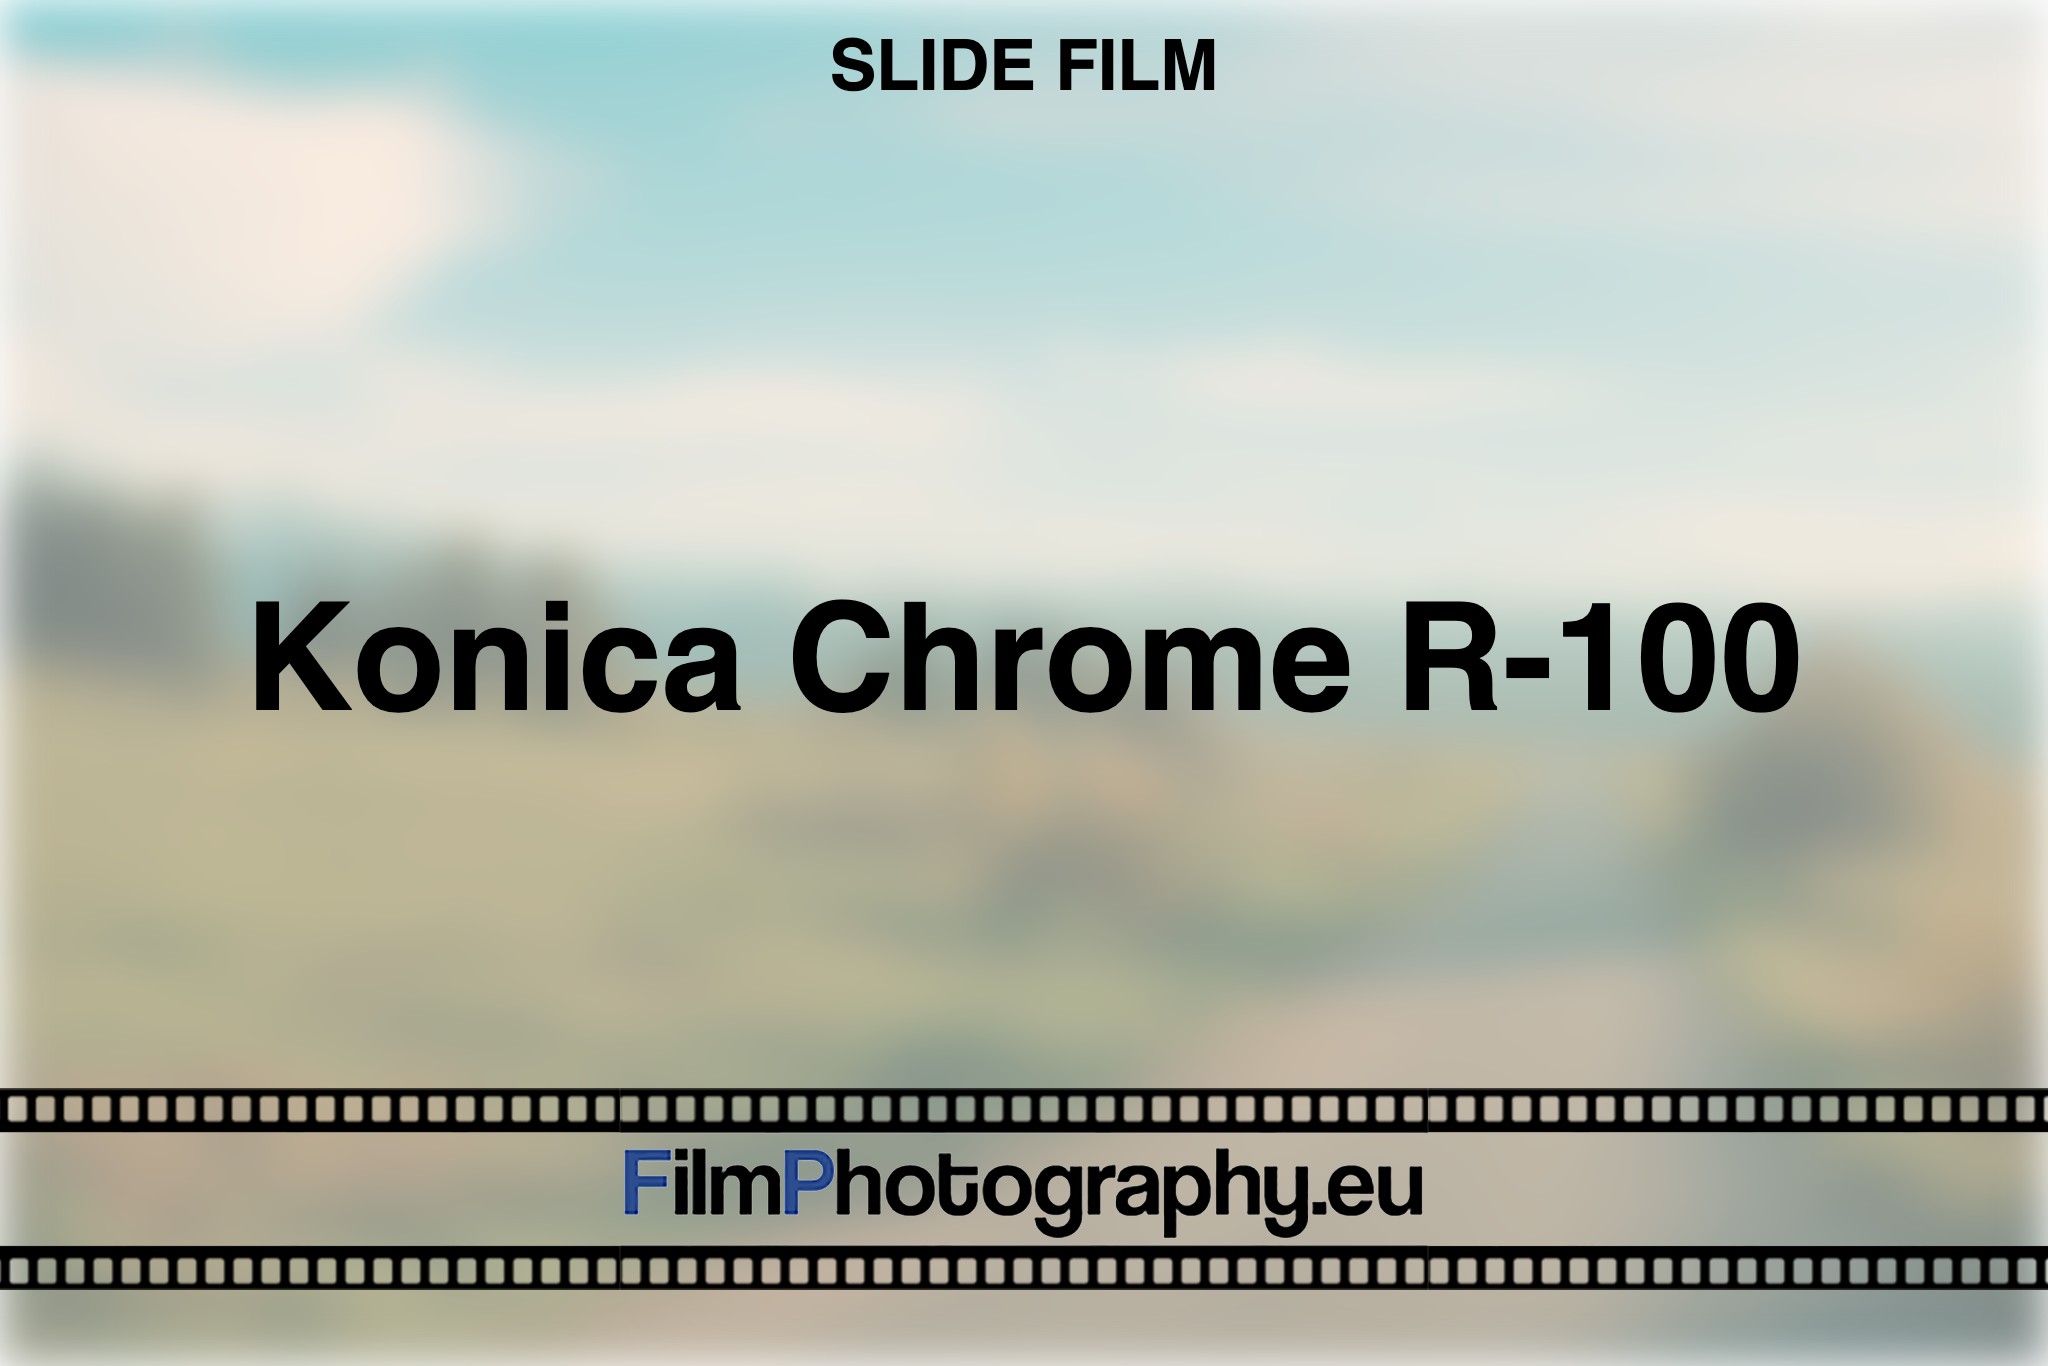 konica-chrome-r-100-slide-film-bnv